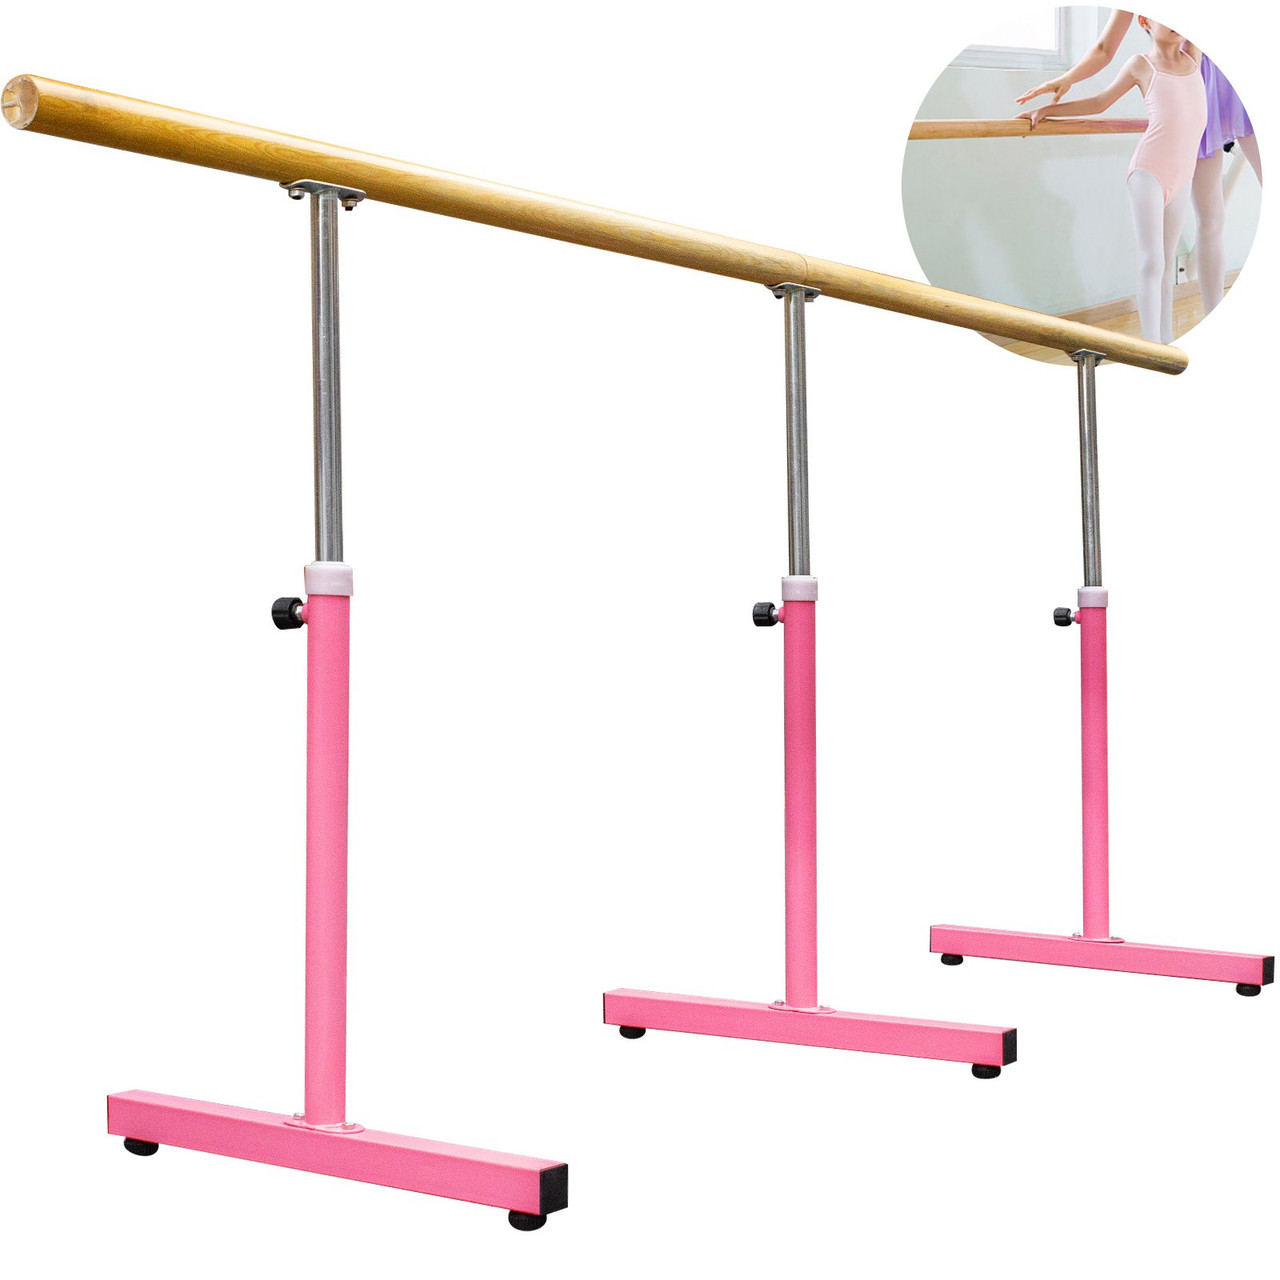 10FT Length Single Ballet Barre,Portable Pink Dance Bar,Adjustable